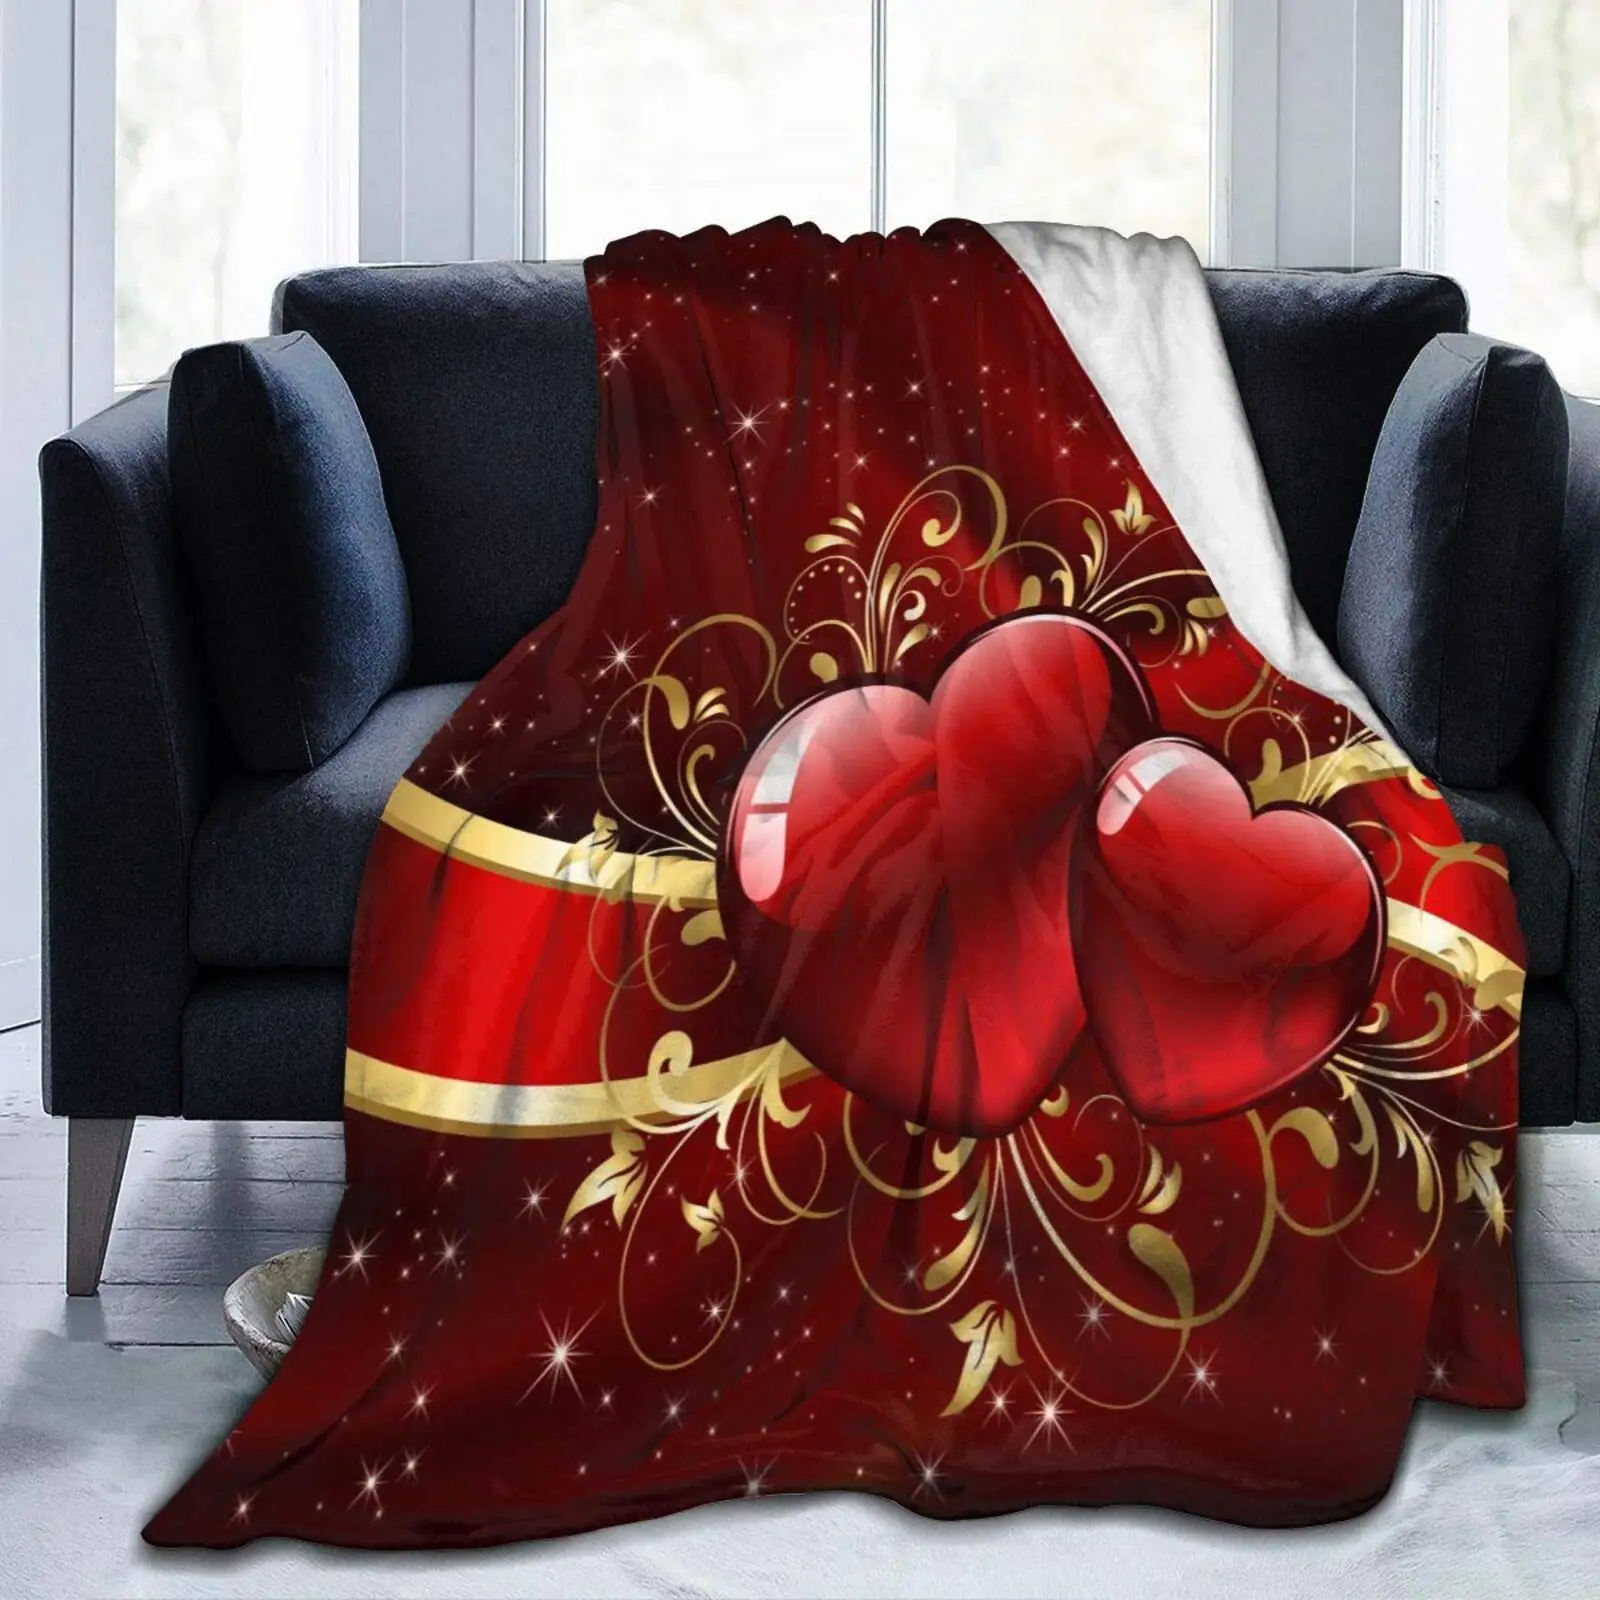 

Великолепное одеяло на День Матери День Святого Валентина с красными сердечками мягкое легкое прочное Фланелевое Флисовое одеяло для кров...